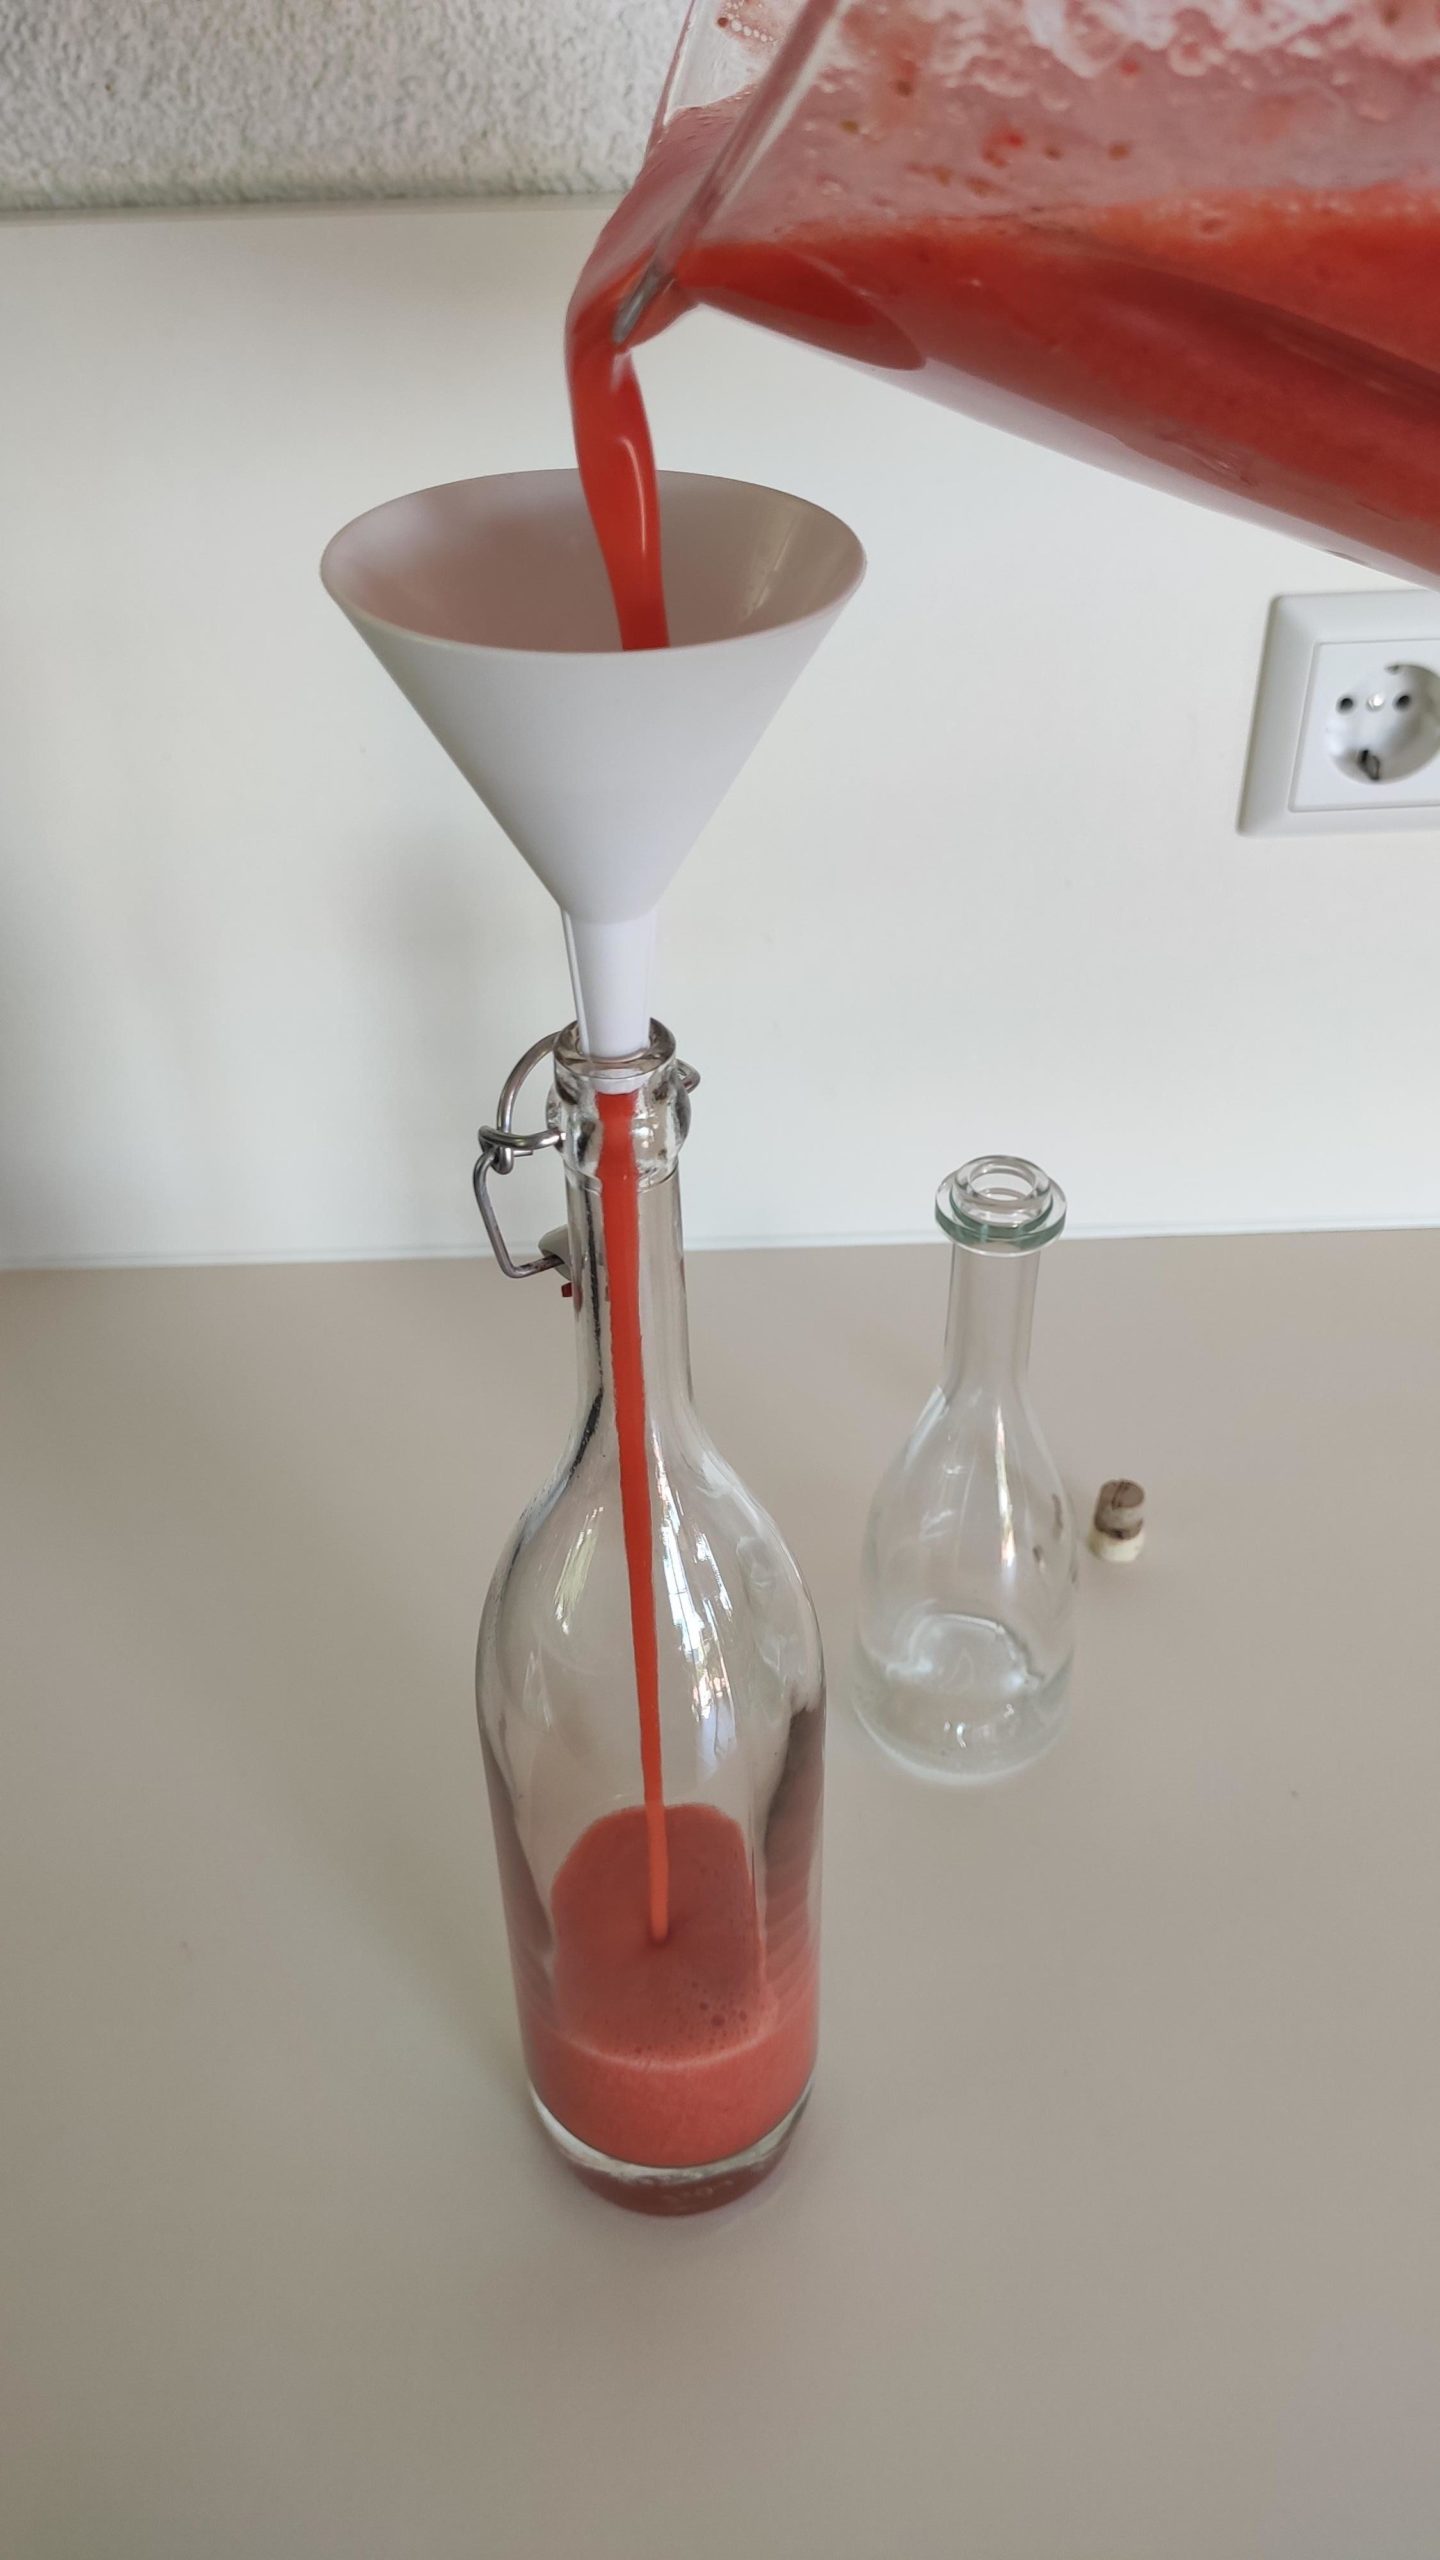 Bild zum Schritt 9 für das Bastel- und DIY-Abenteuer für Kinder: 'Nun den Erdbeerlimes in ausgekochte Glasflaschen füllen. Dafür einen Trichter...'